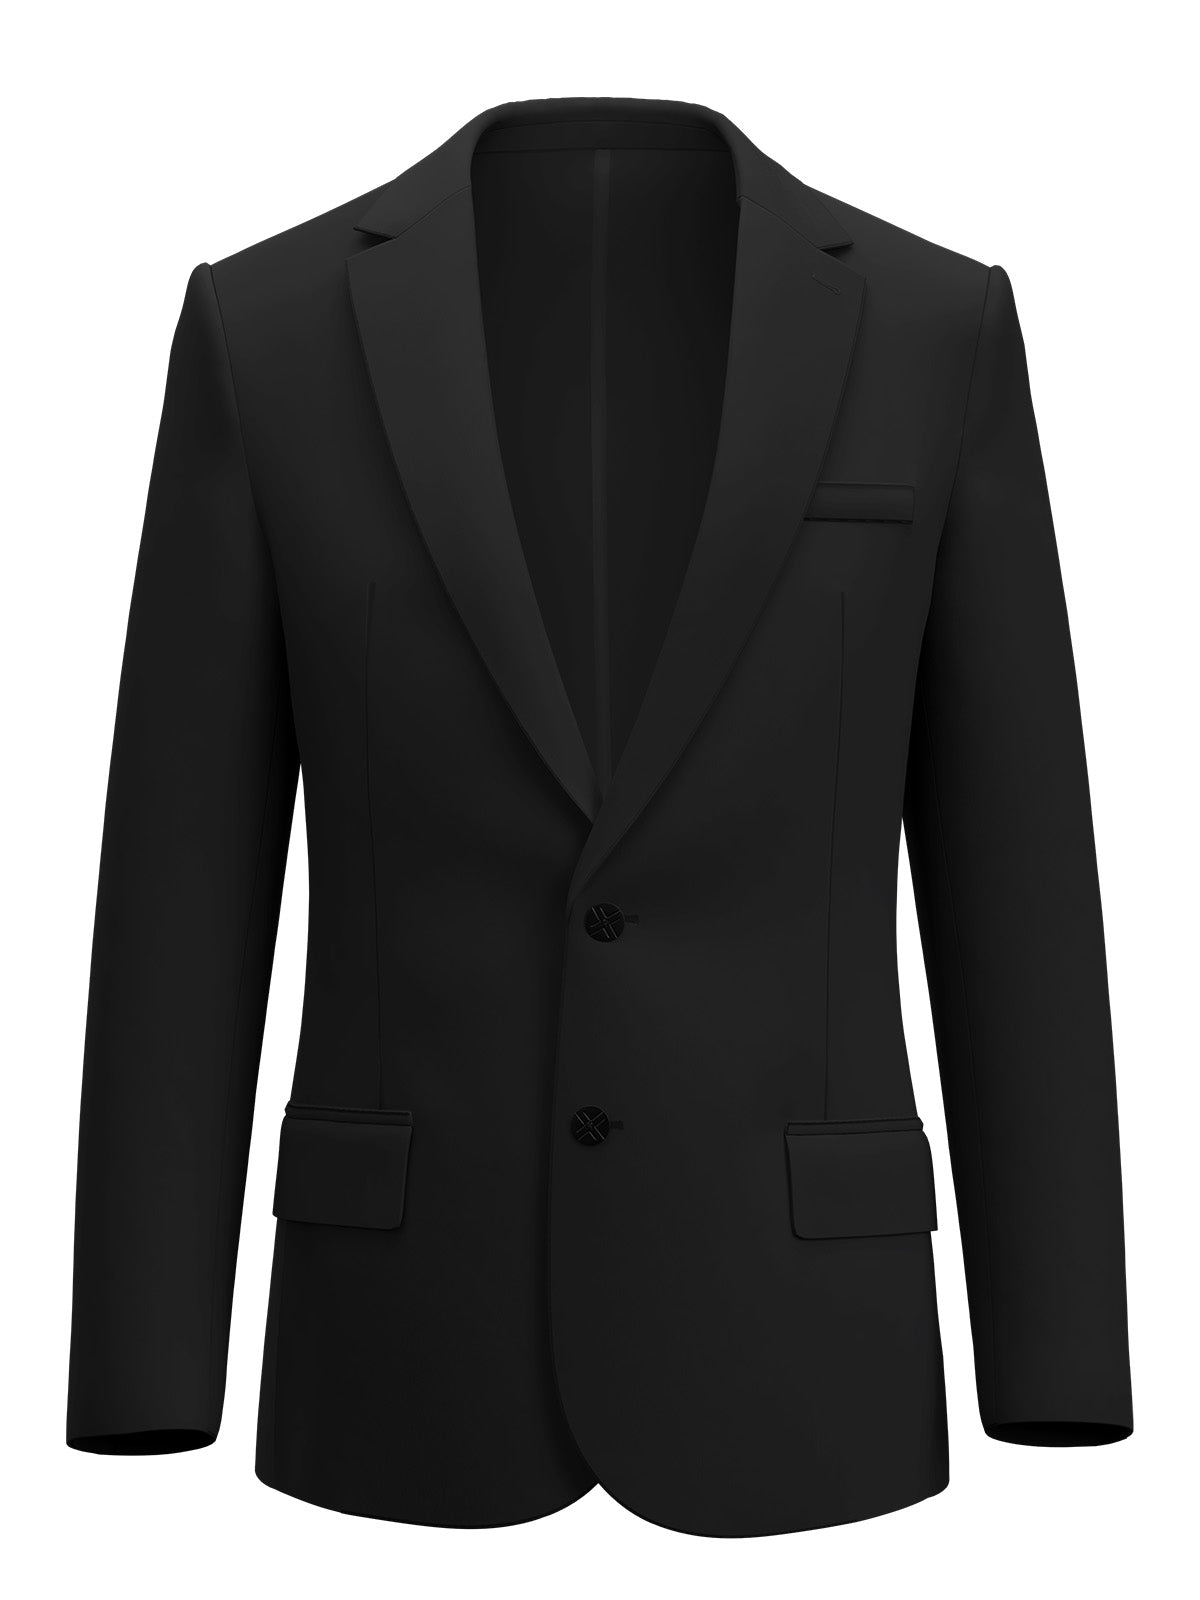 xSuit 4.0 Black  Performance Stretch & Machine Washable Men's Suit